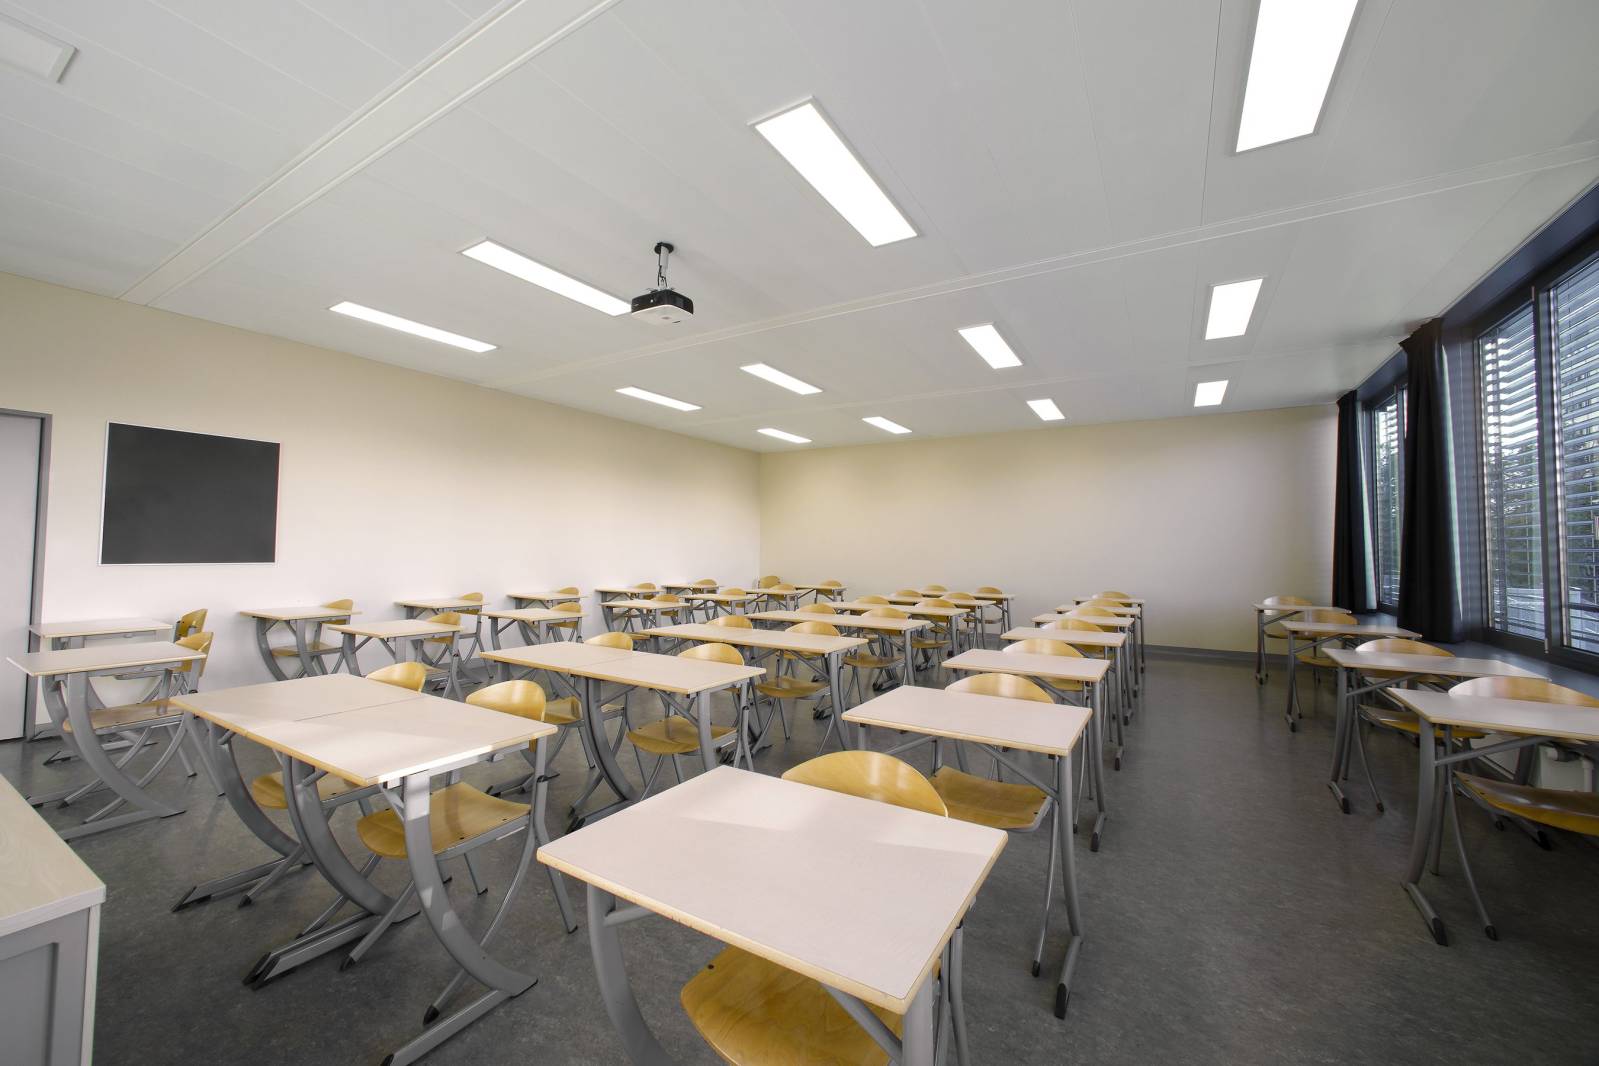 éclairage homogène de la salle de classe, installation de plafonnier led modèle slimy de ledixa